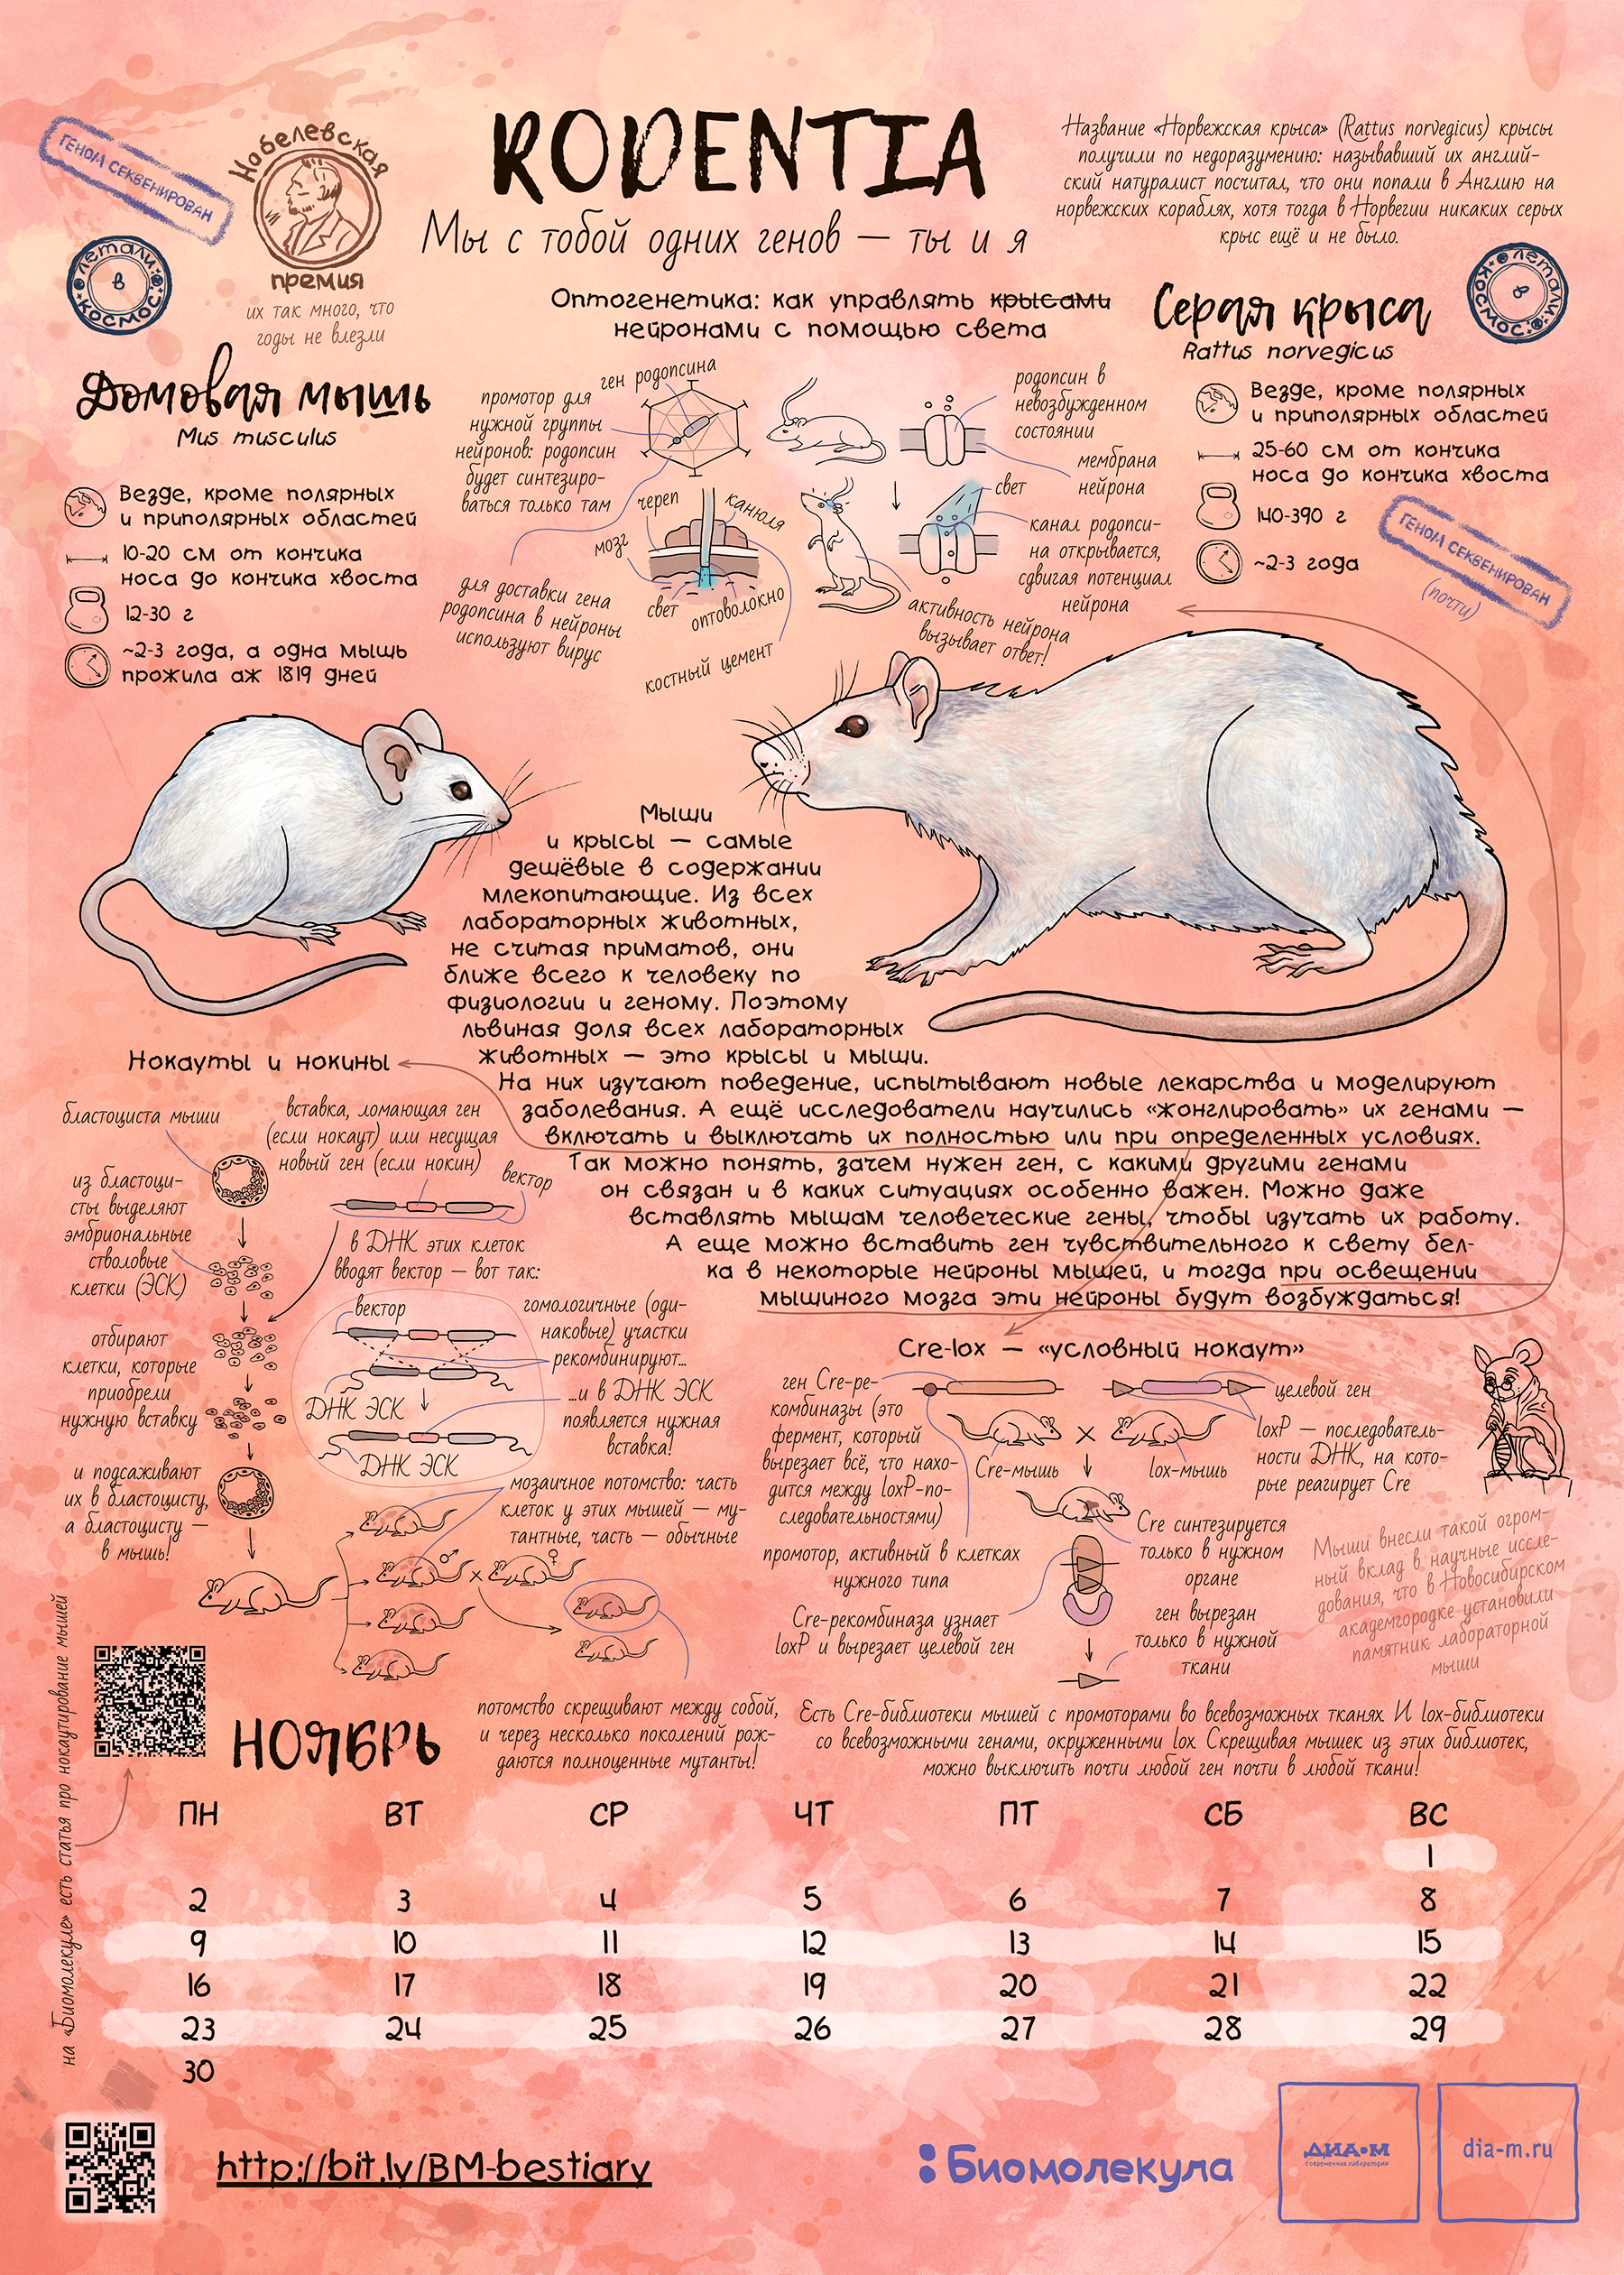 Мышь и крыса — герои календаря «Биомолекулы»